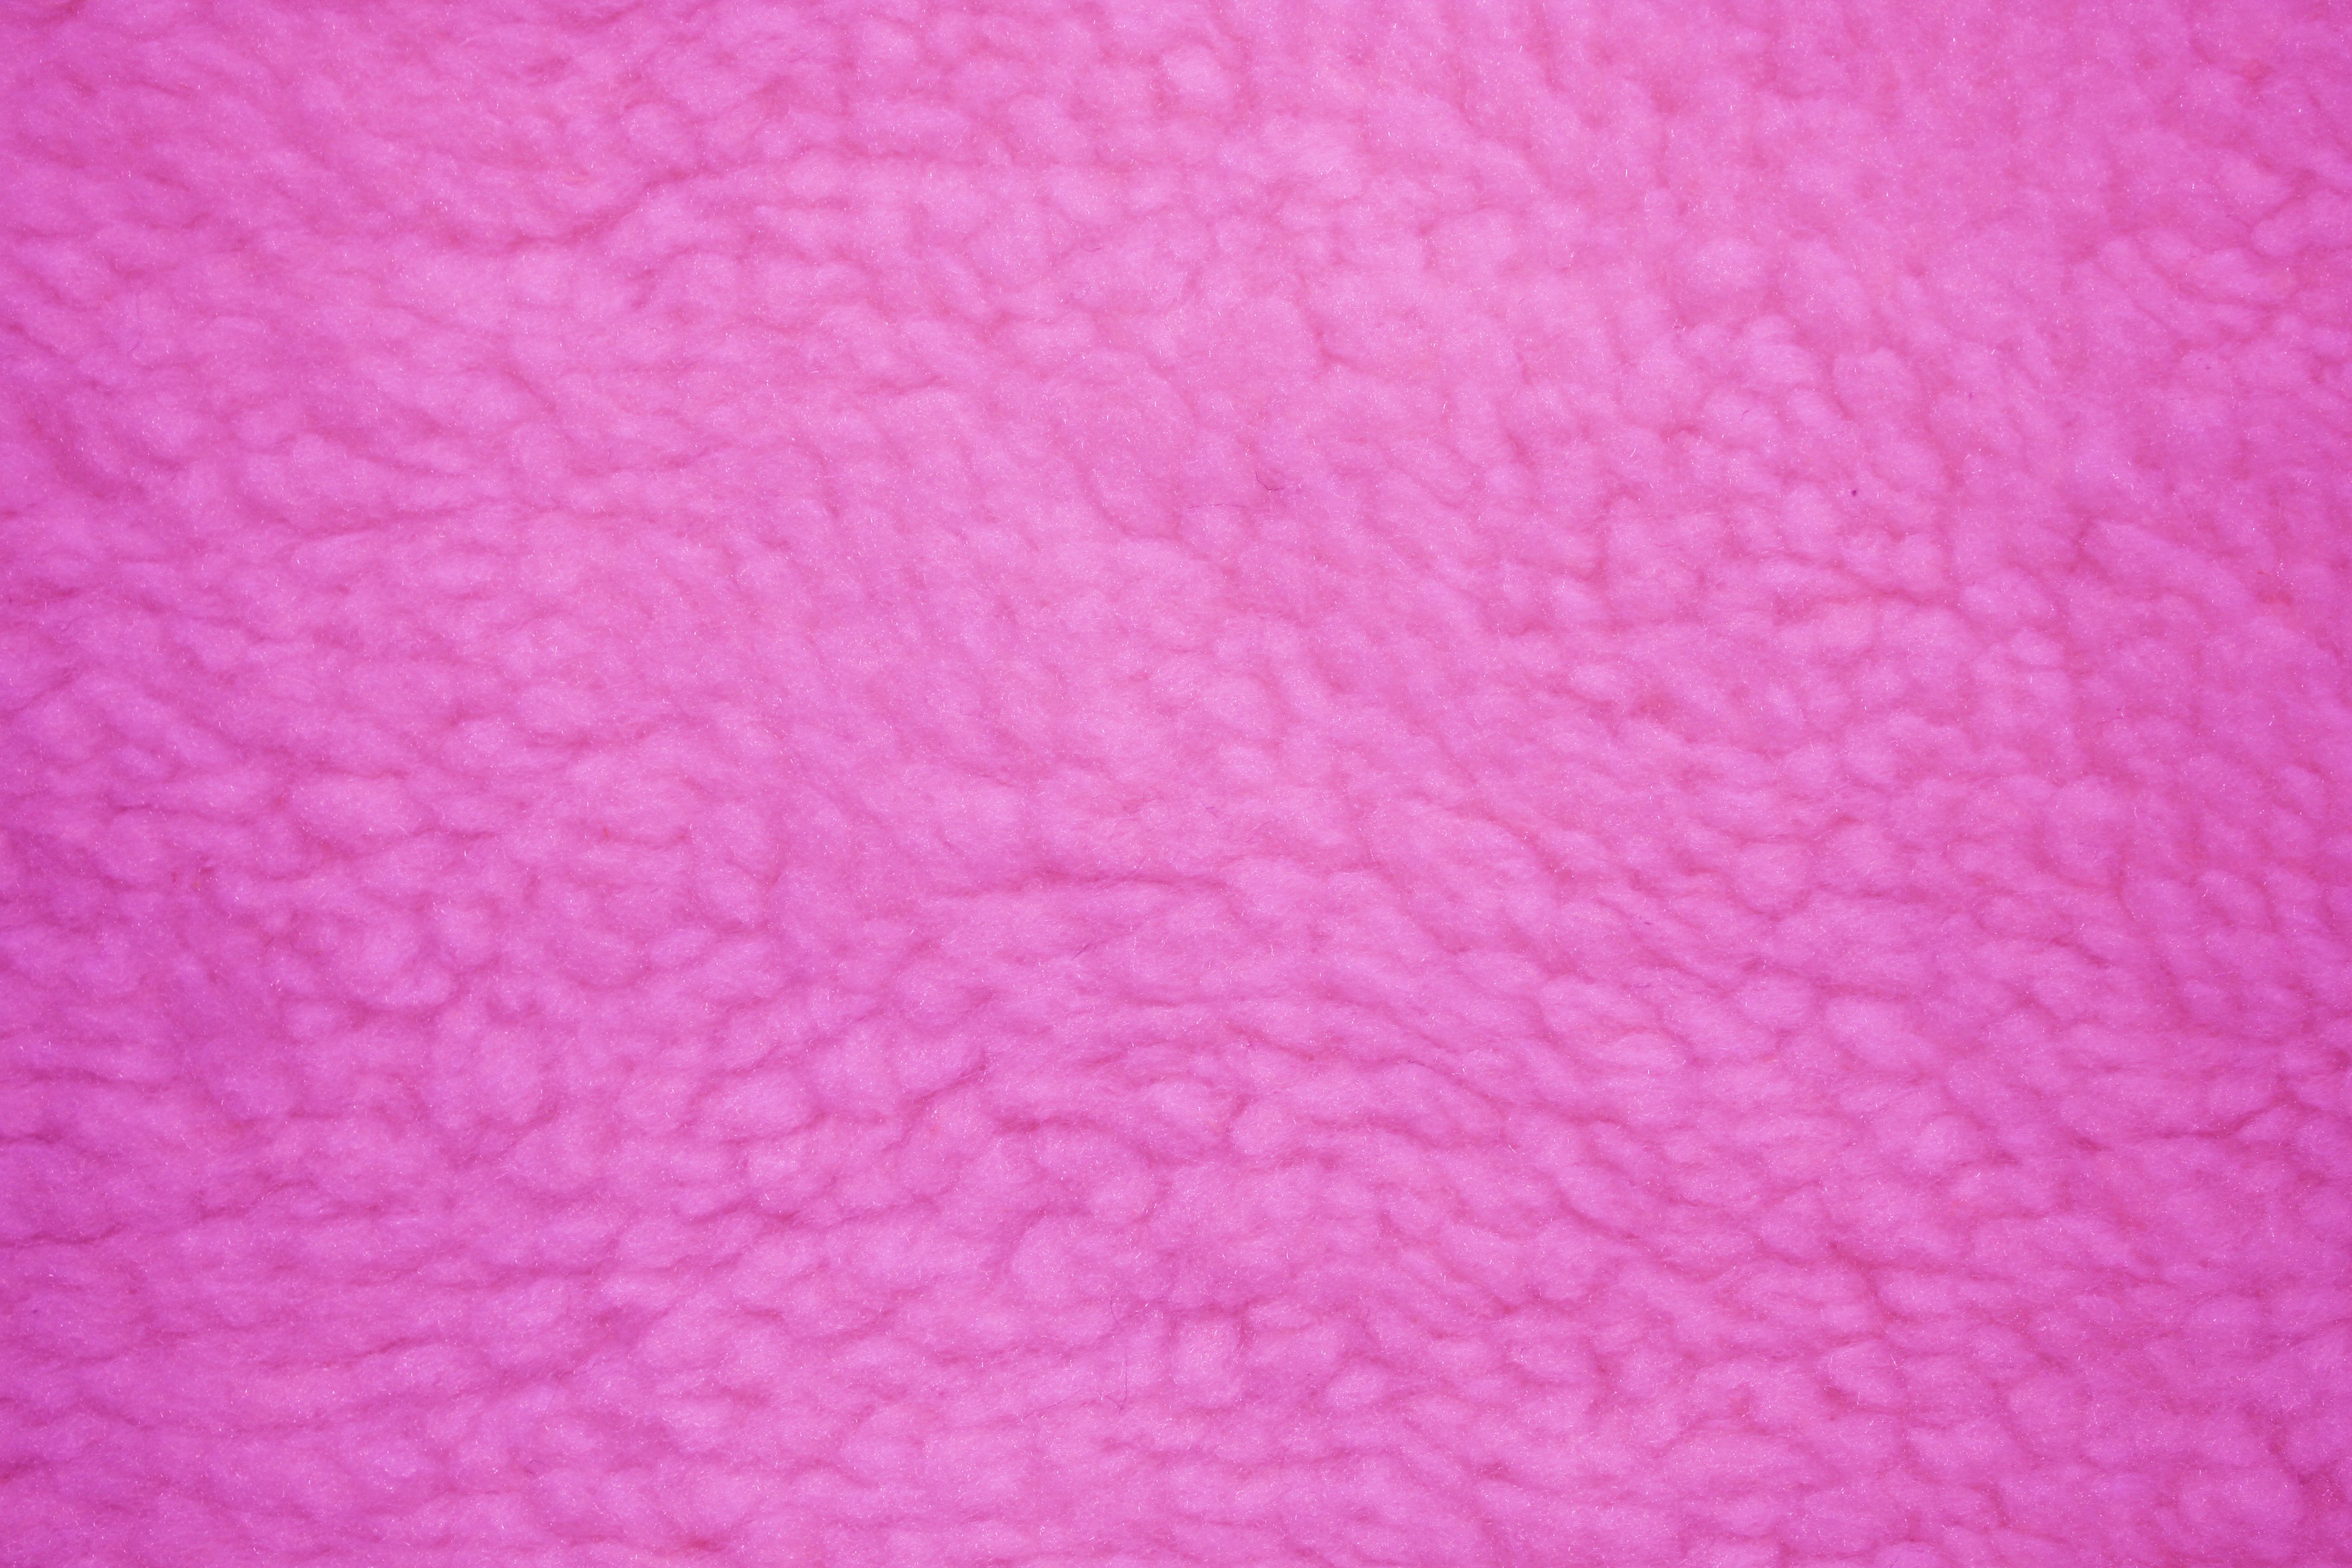 Шерсть, текстура шерсти, скачать фото фон шерсть, Wool texture background image